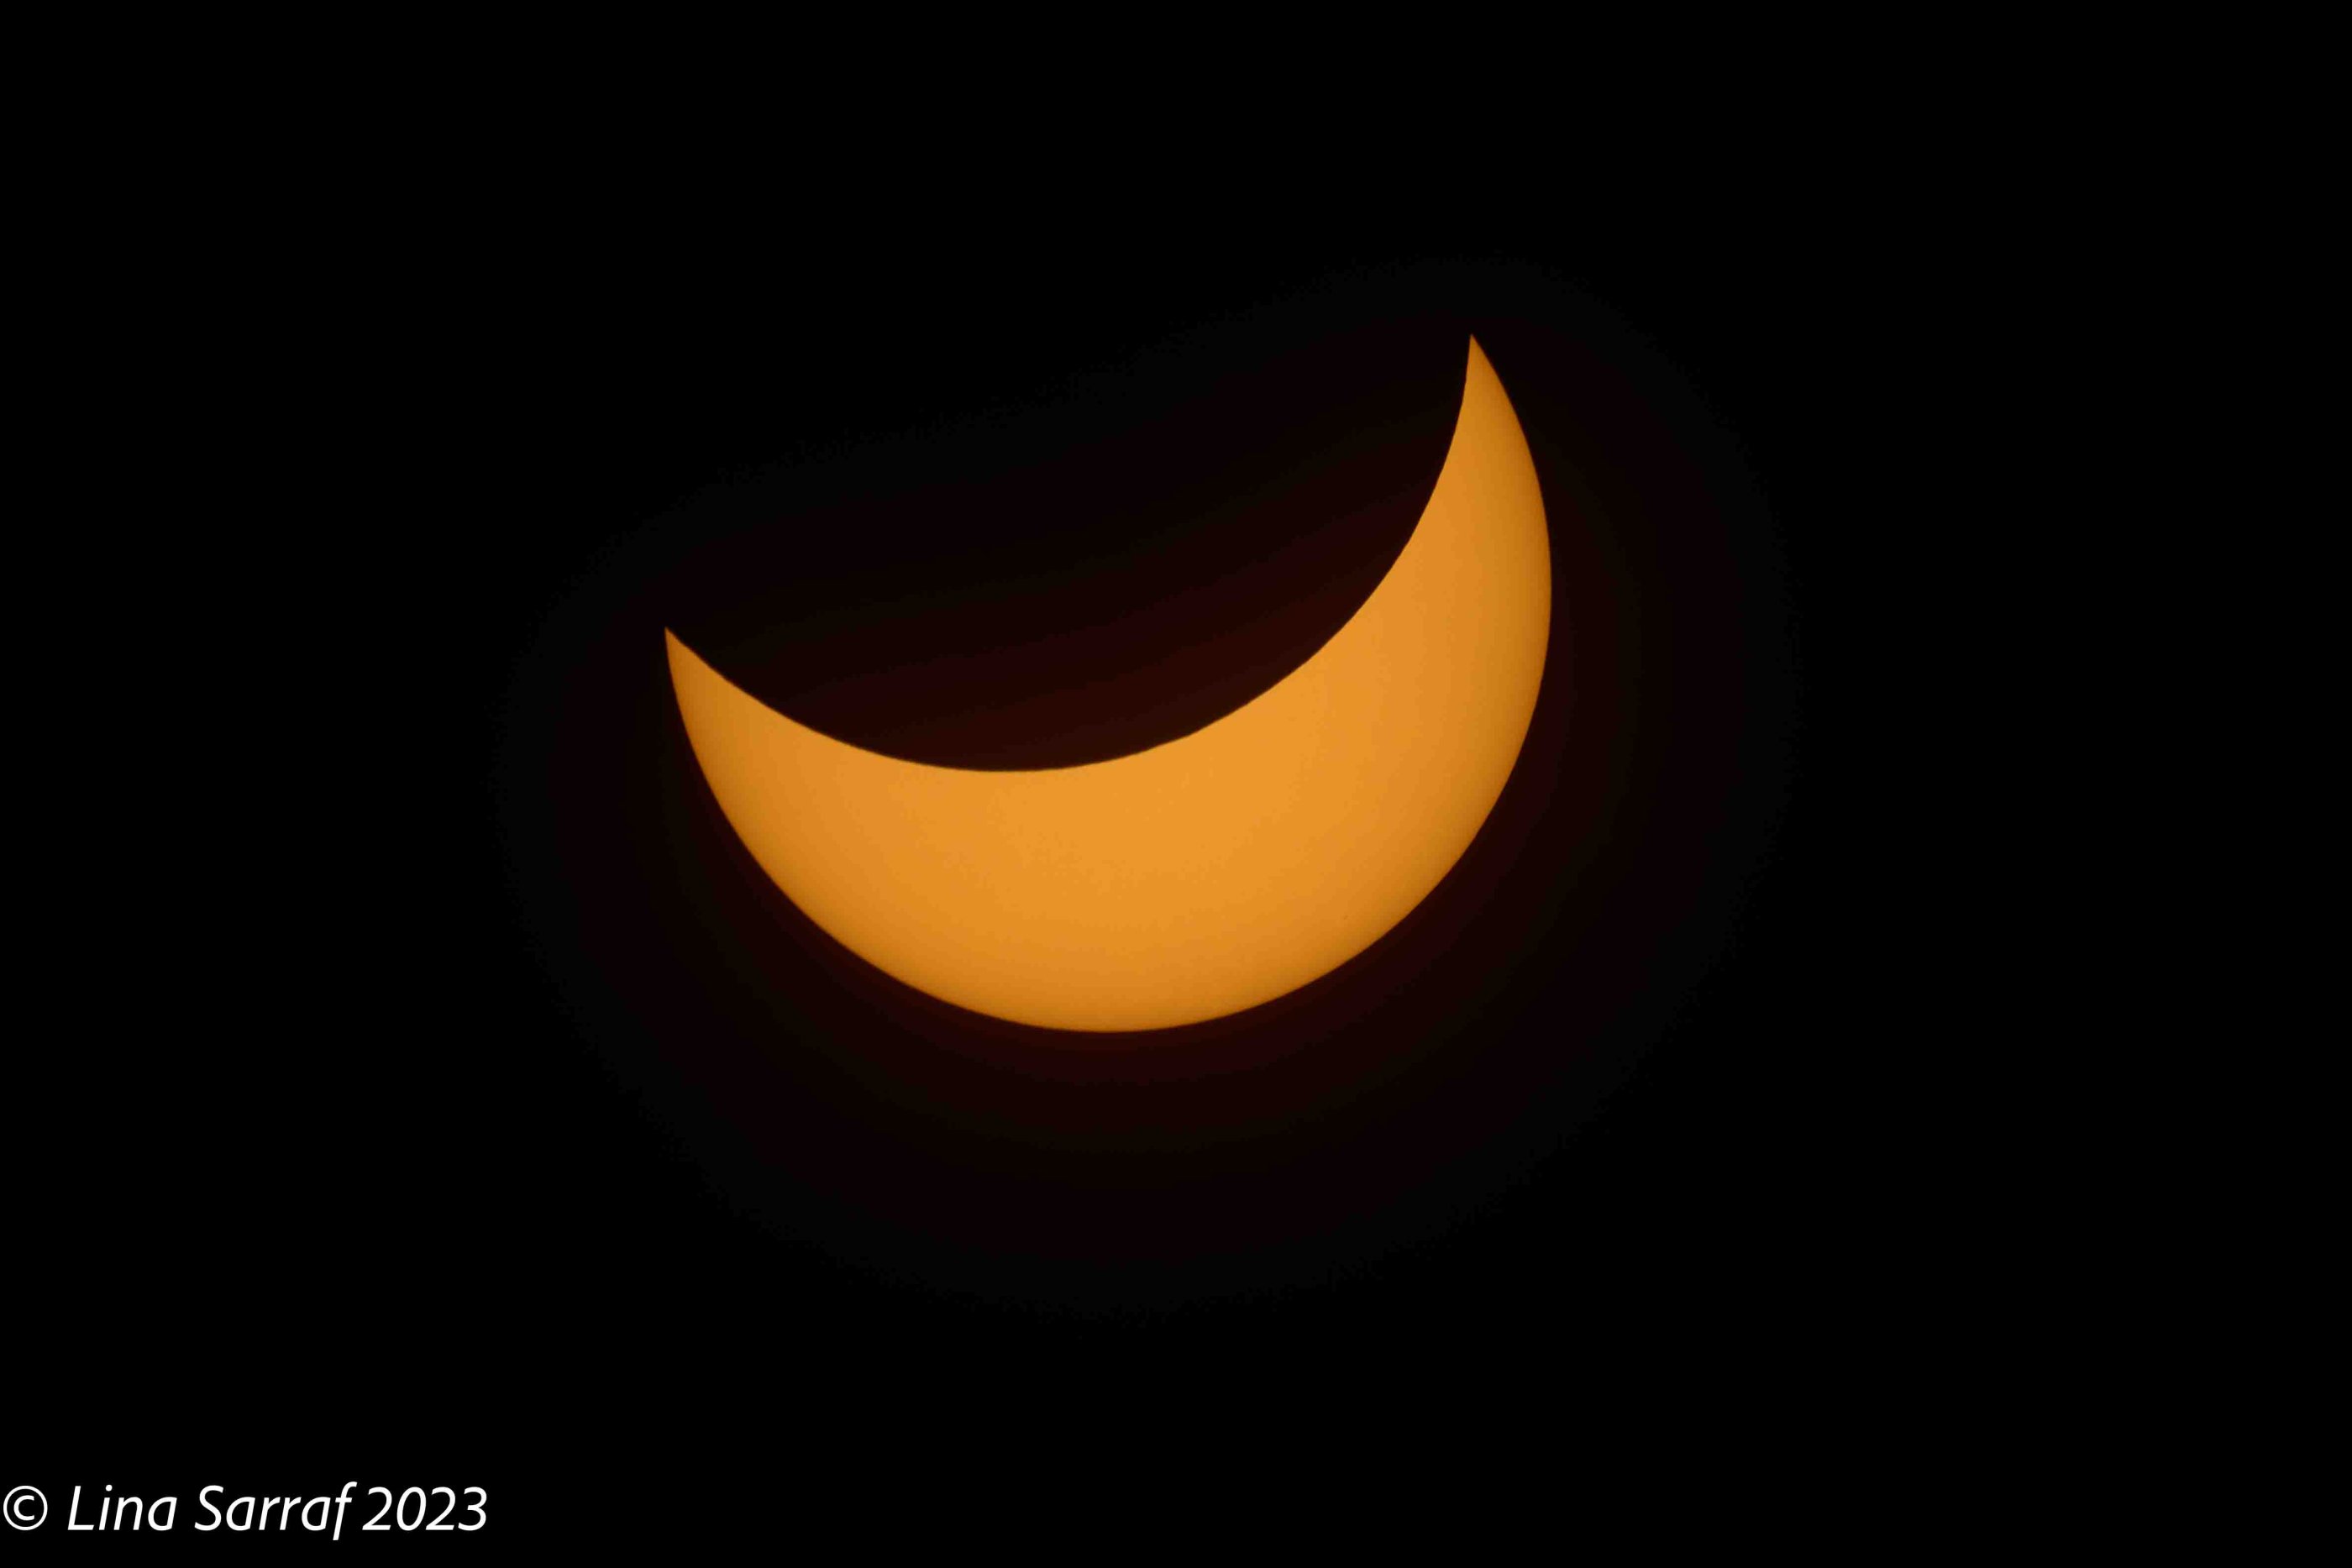  eclipse-14.jpg